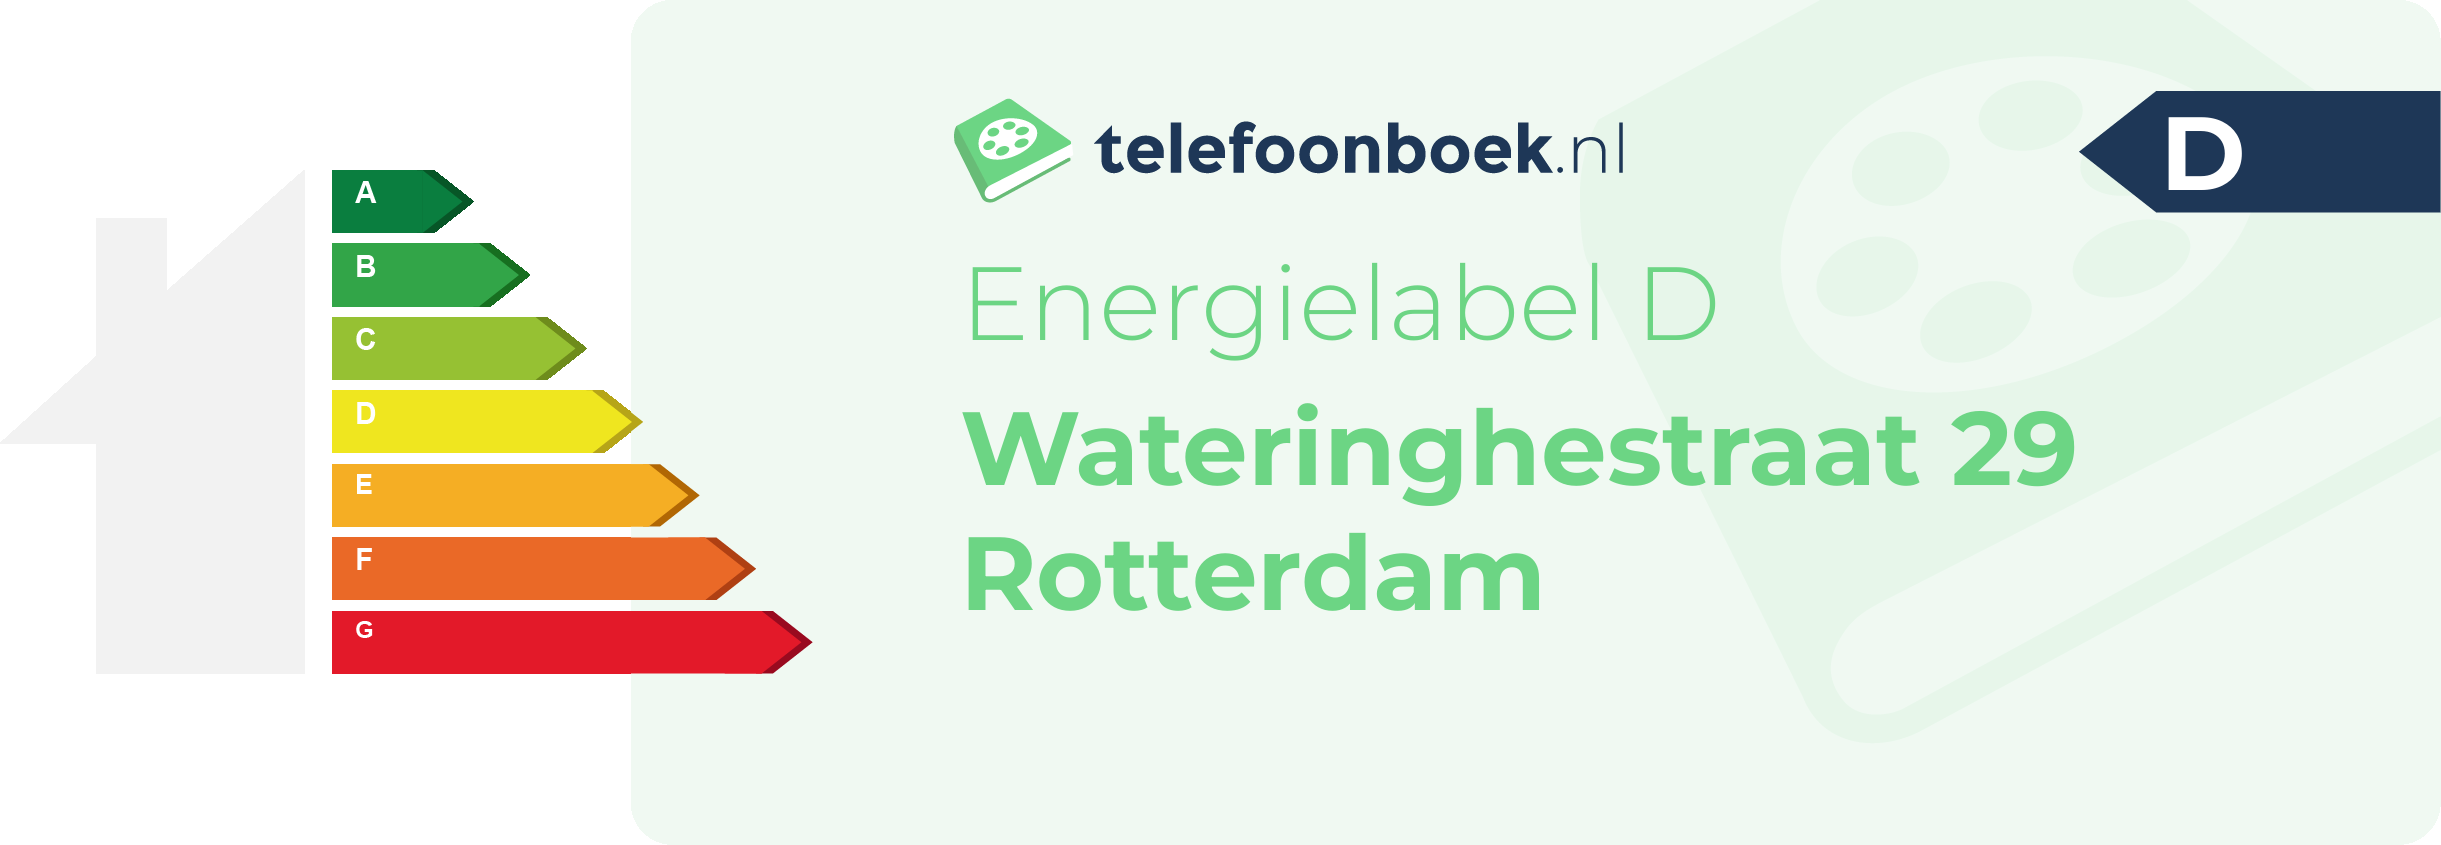 Energielabel Wateringhestraat 29 Rotterdam